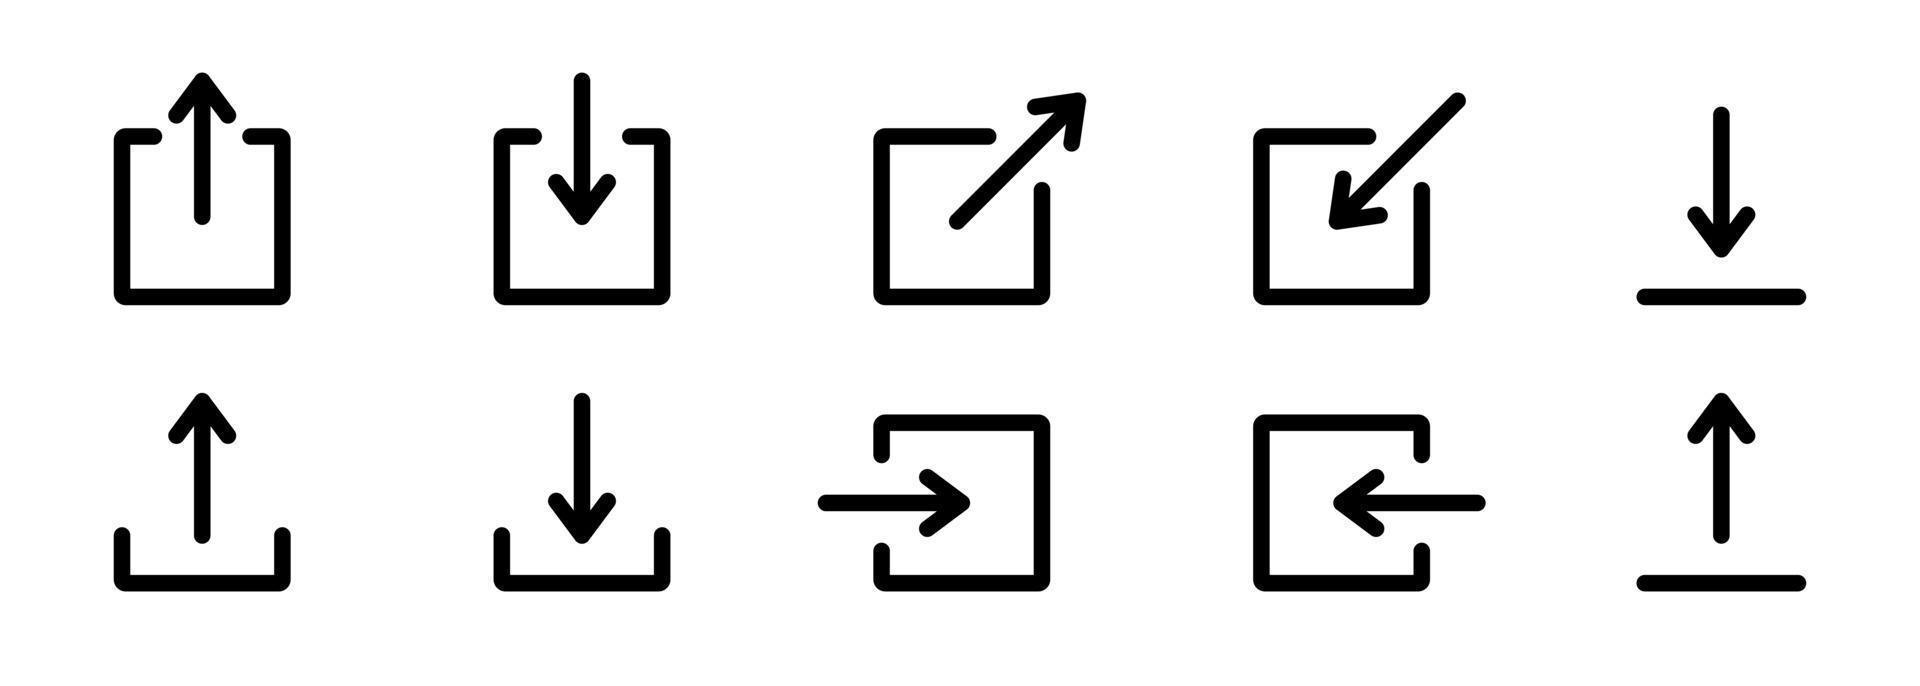 condividi, scarica il pulsante per l'icona della linea di social media. simboli di freccia e quadrati di caricamento, condividi per l'icona del profilo del sito Web. invia il pittogramma lineare del segno del file. illustrazione vettoriale isolata.